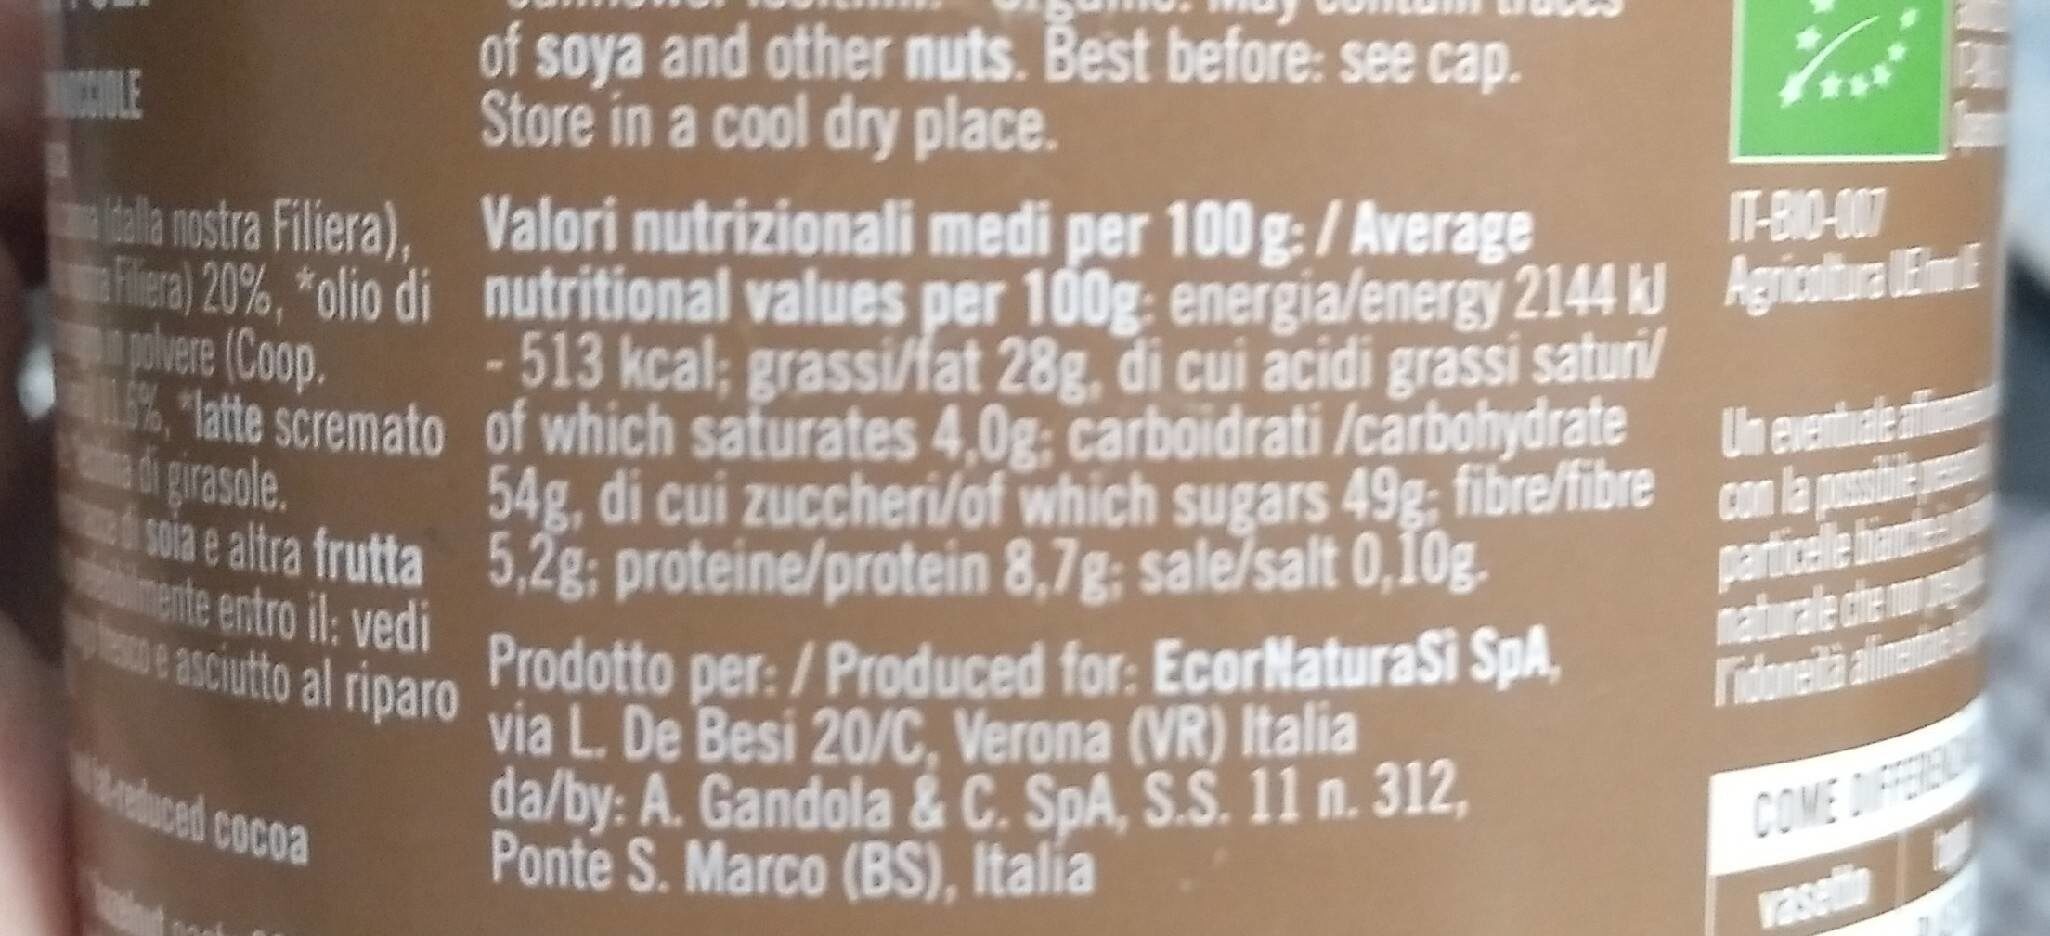 Crema cacao e nocciole - Información nutricional